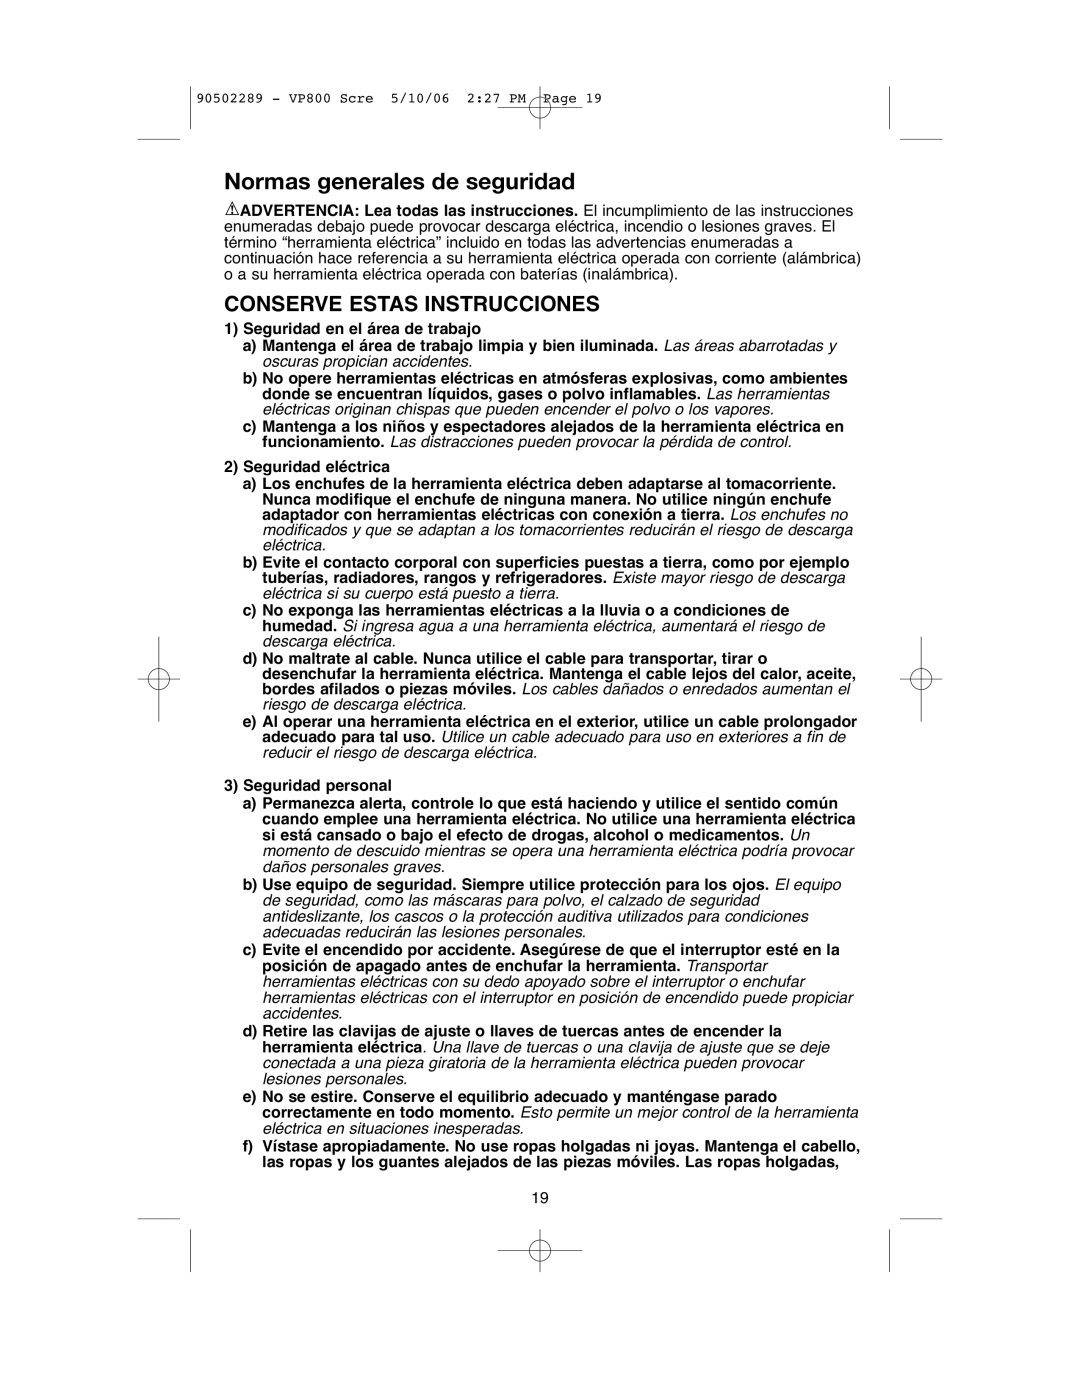 Black & Decker VP800 instruction manual Normas generales de seguridad, Conserve Estas Instrucciones 